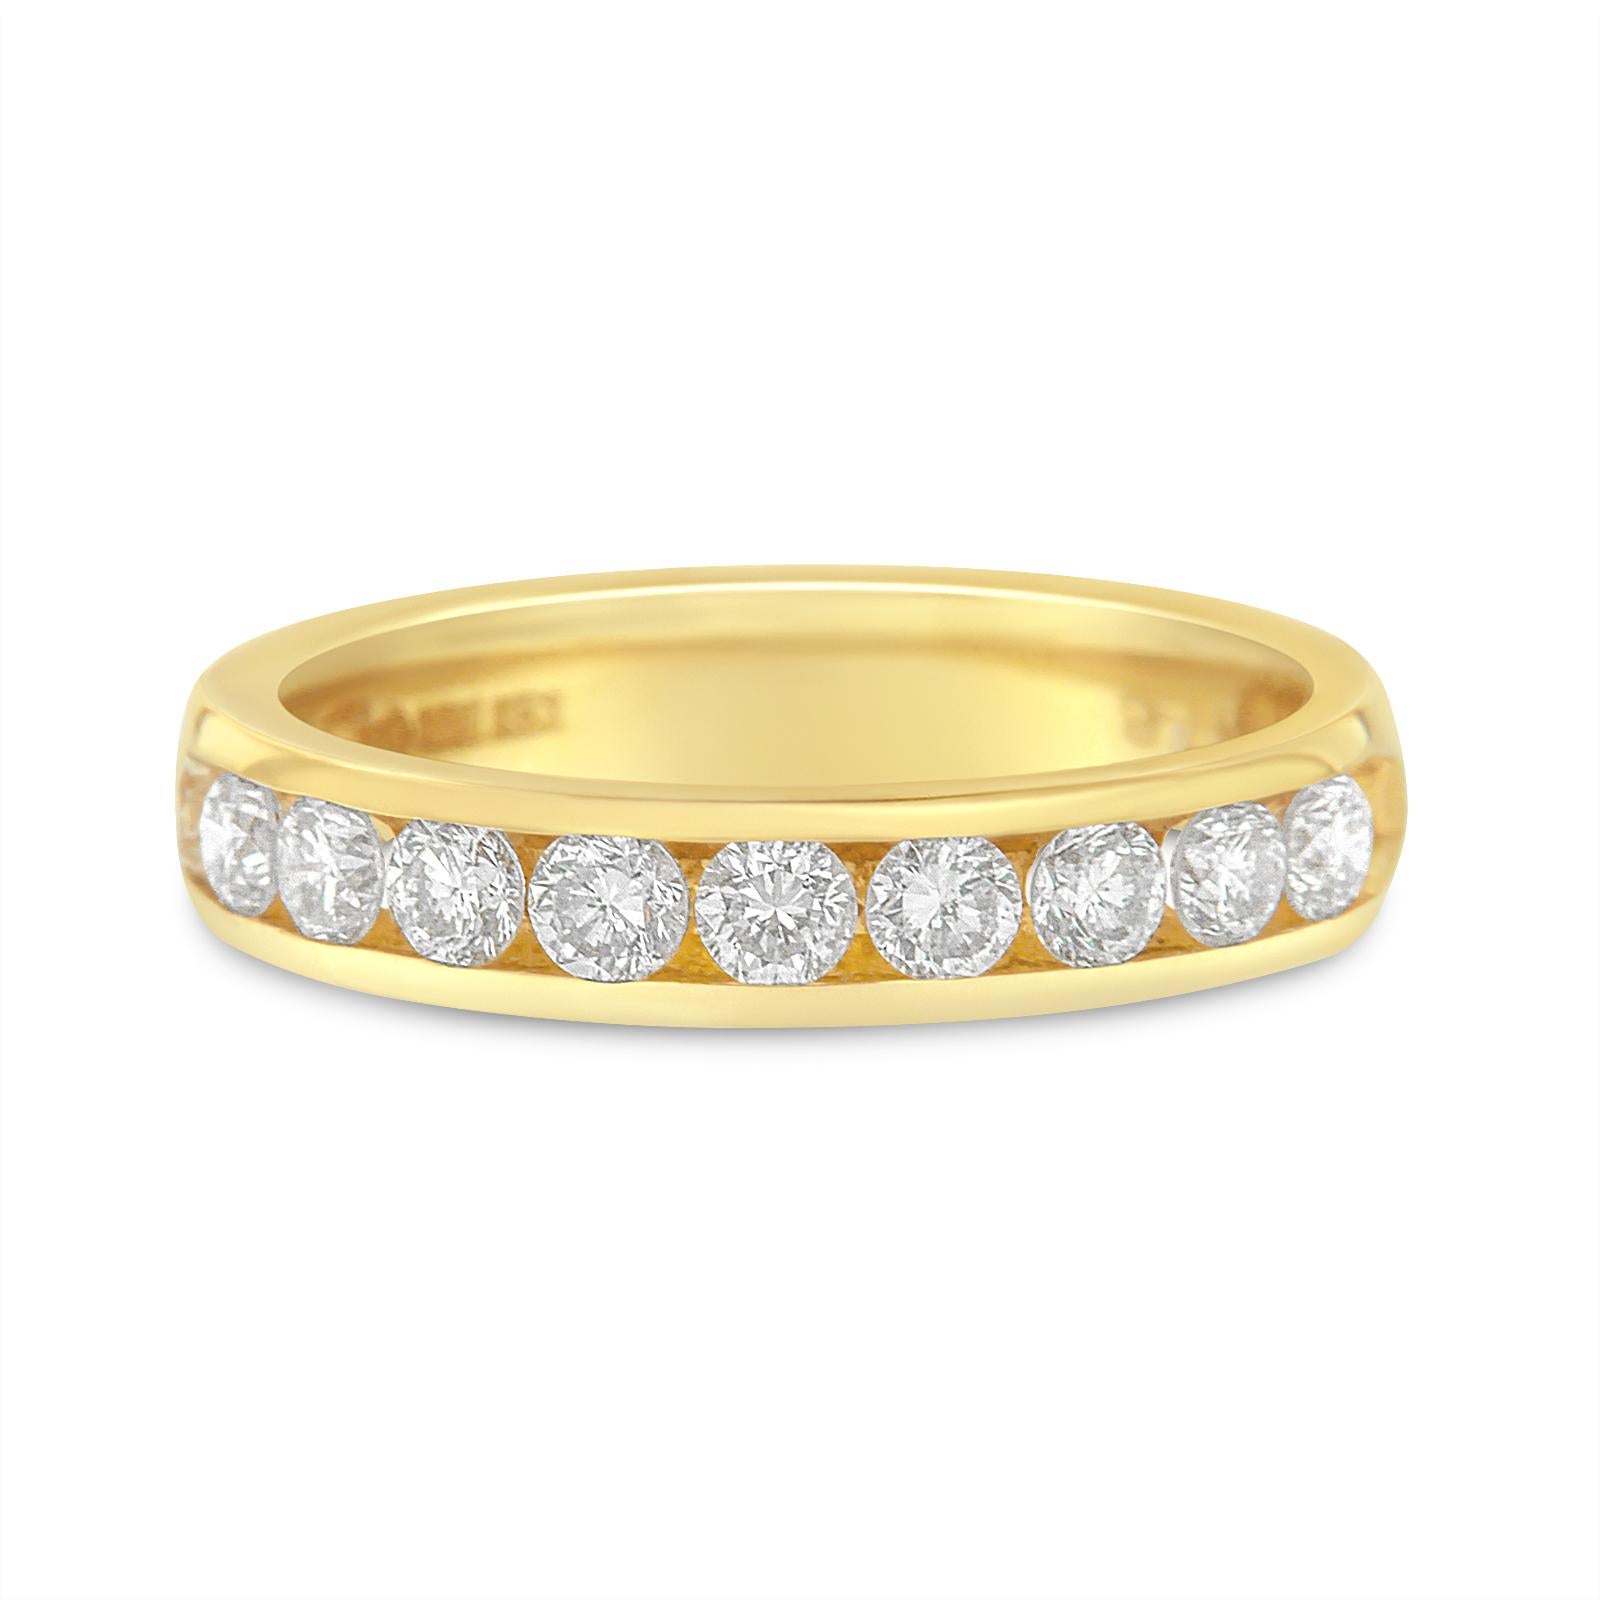 18K Yellow Gold 1.00 Carat Diamond Wedding Band Ring 3